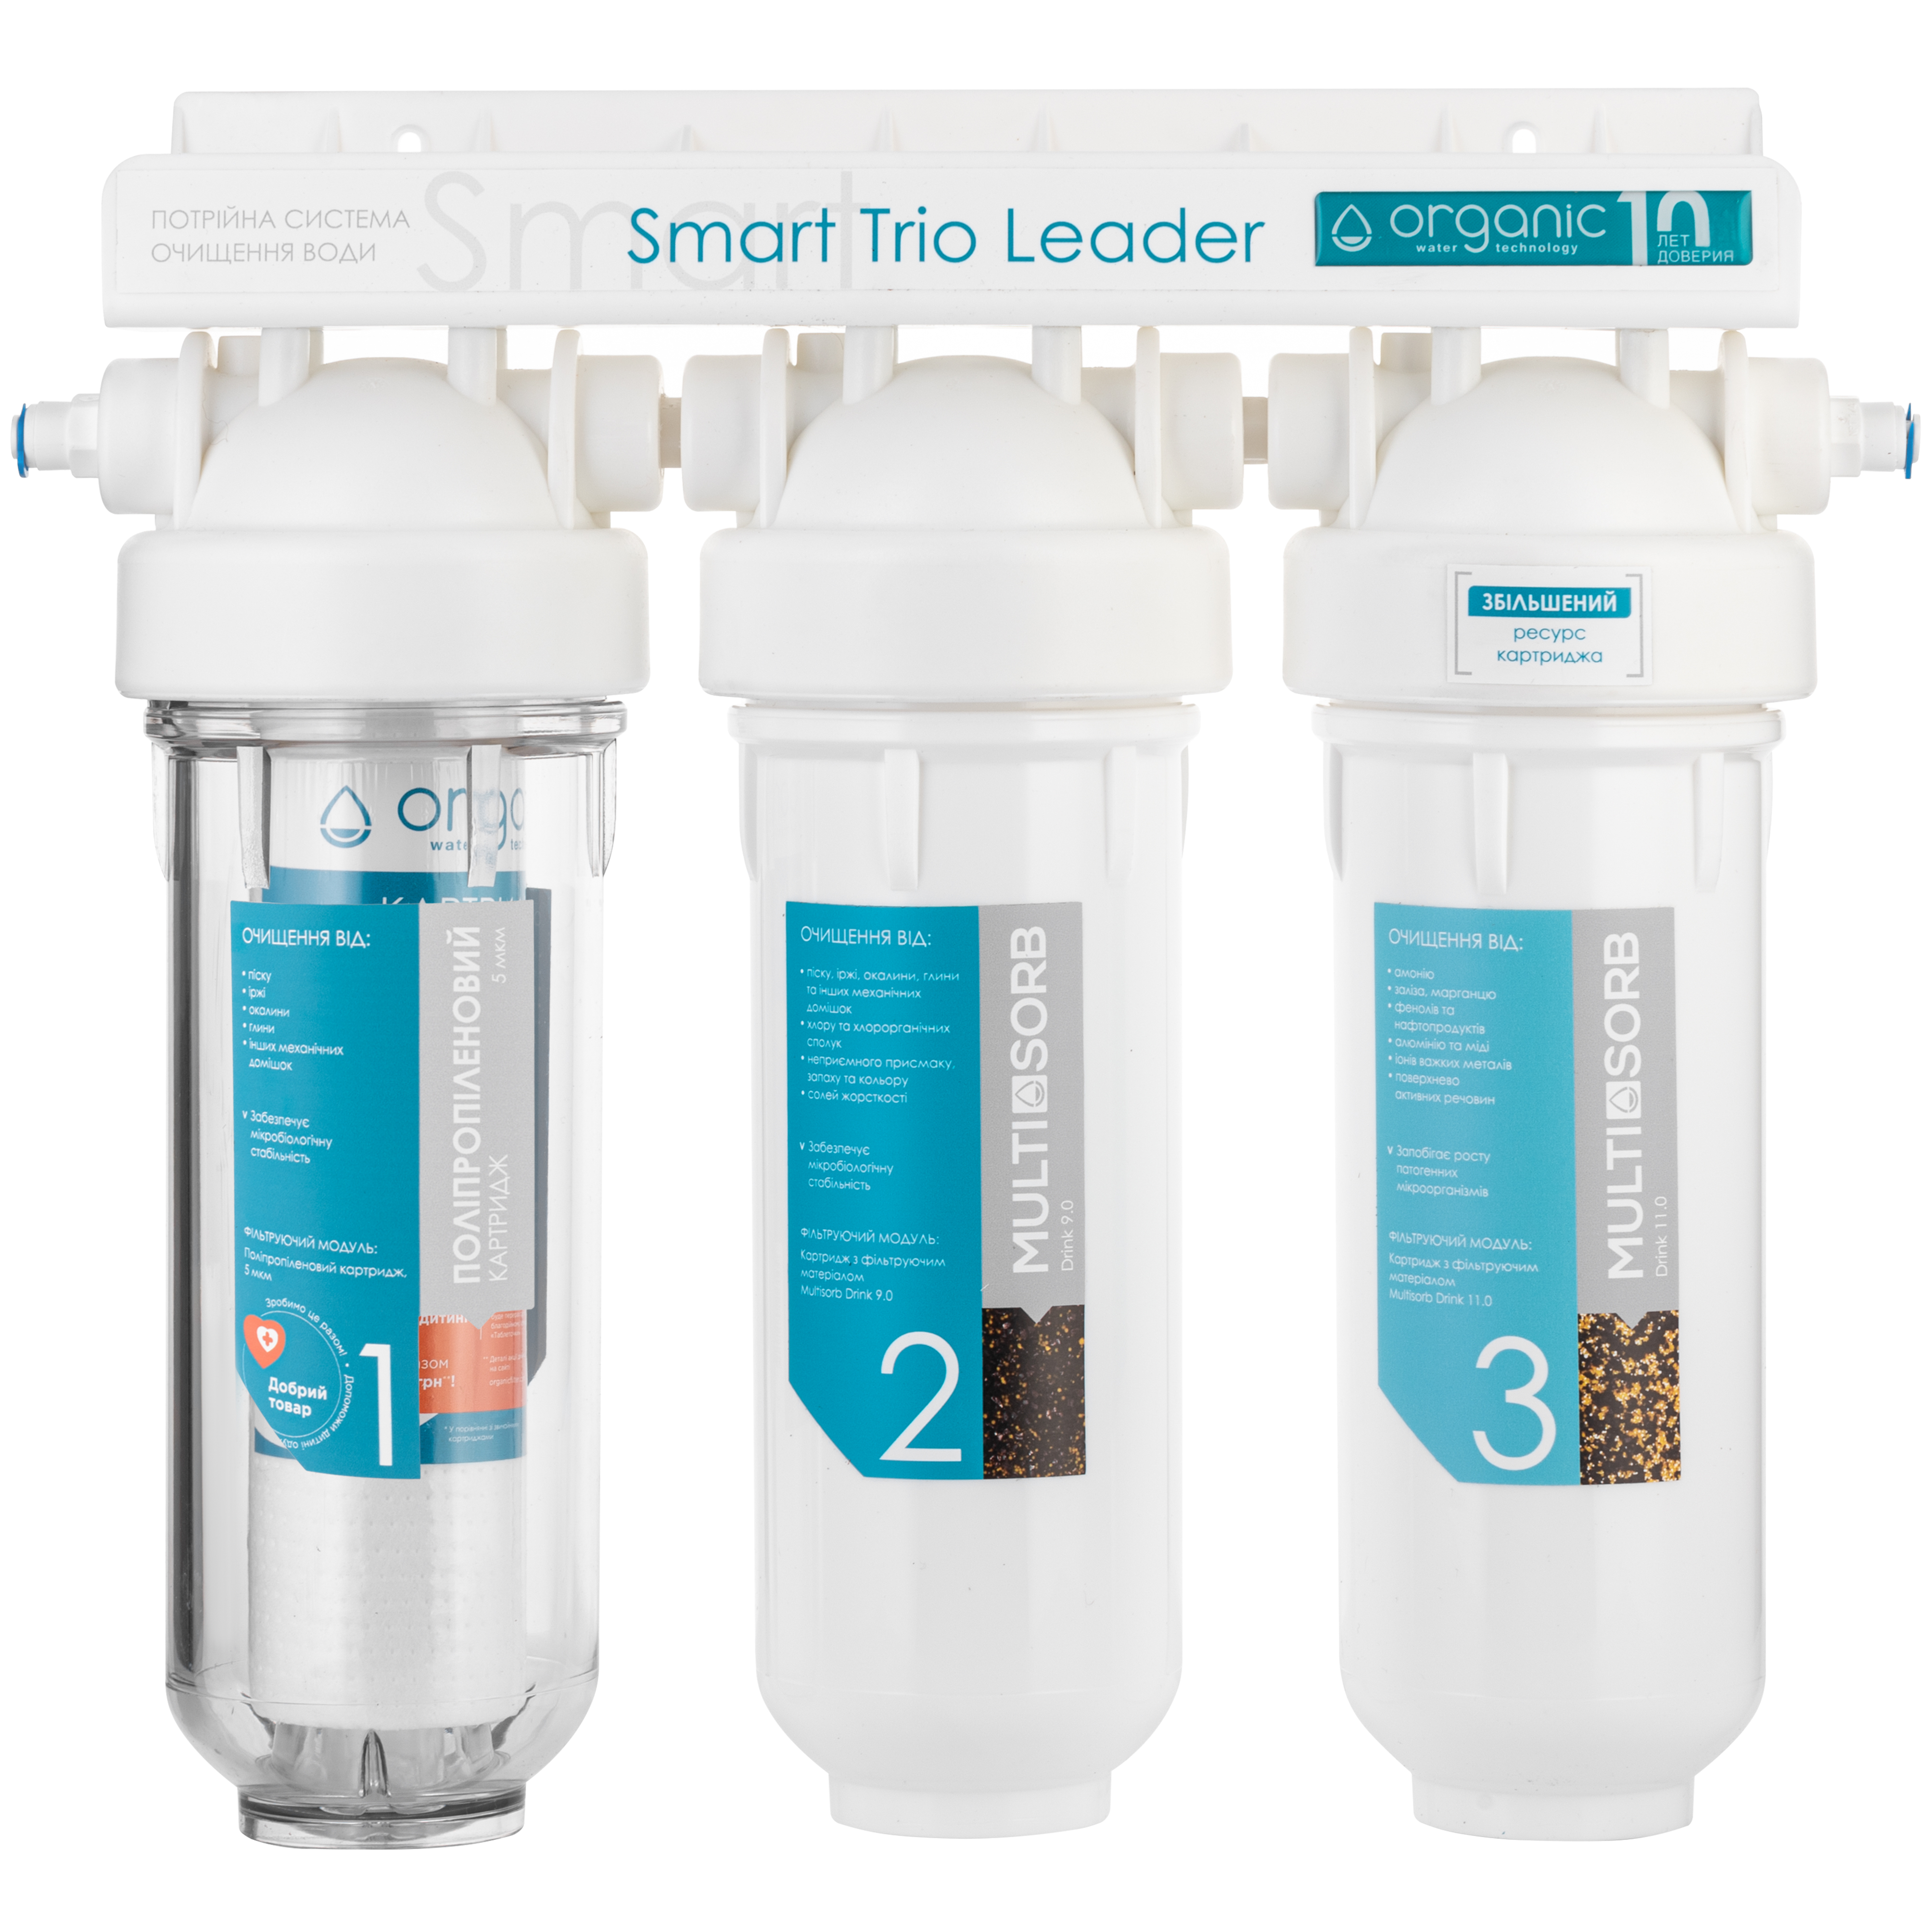 Отзывы фильтр для воды Organic Smart TRIO LEADER